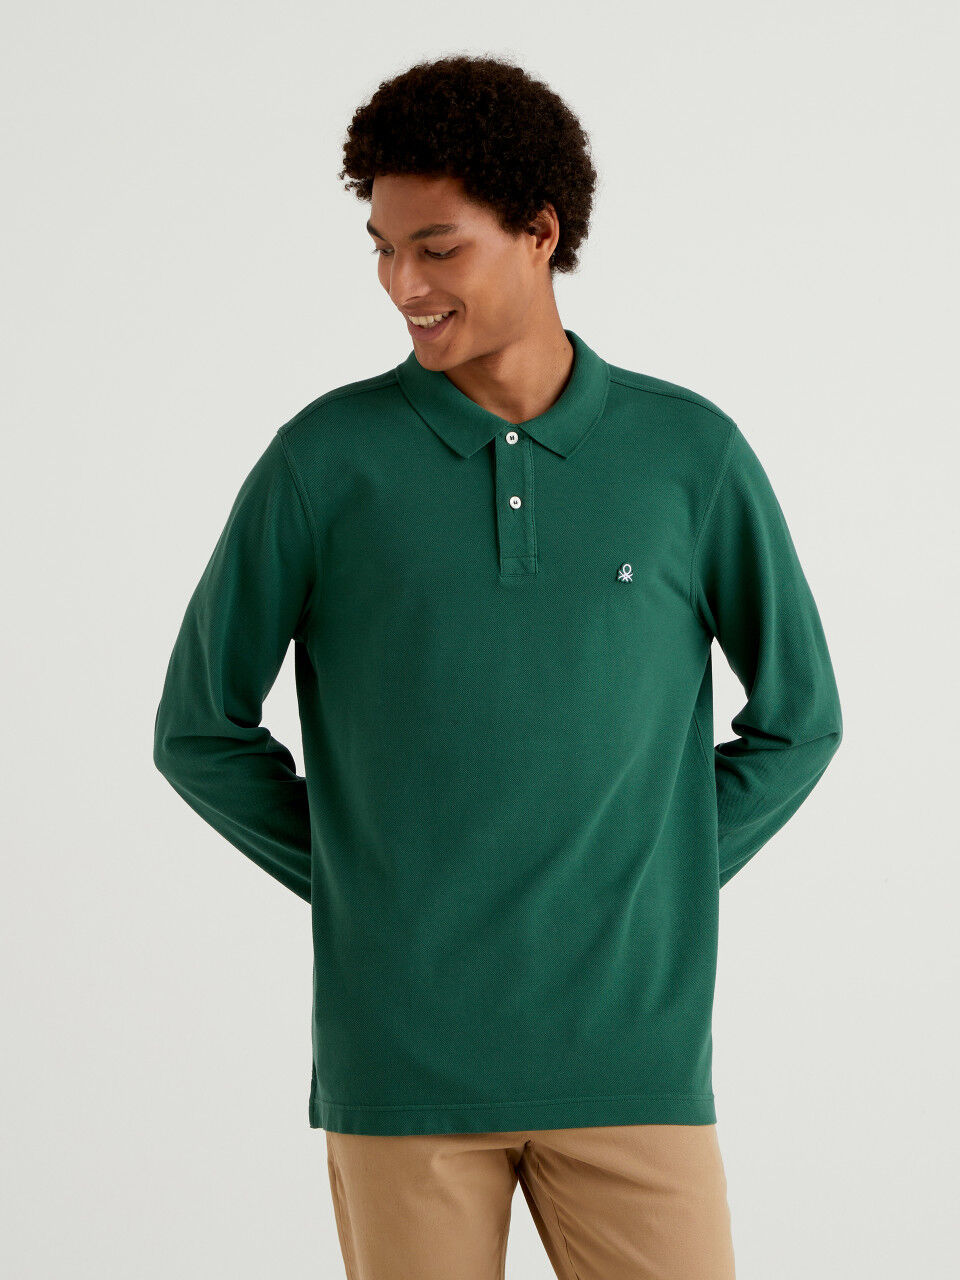 Polo maglia cotone maniche lunghe Mango Uomo Abbigliamento Top e t-shirt T-shirt Polo 